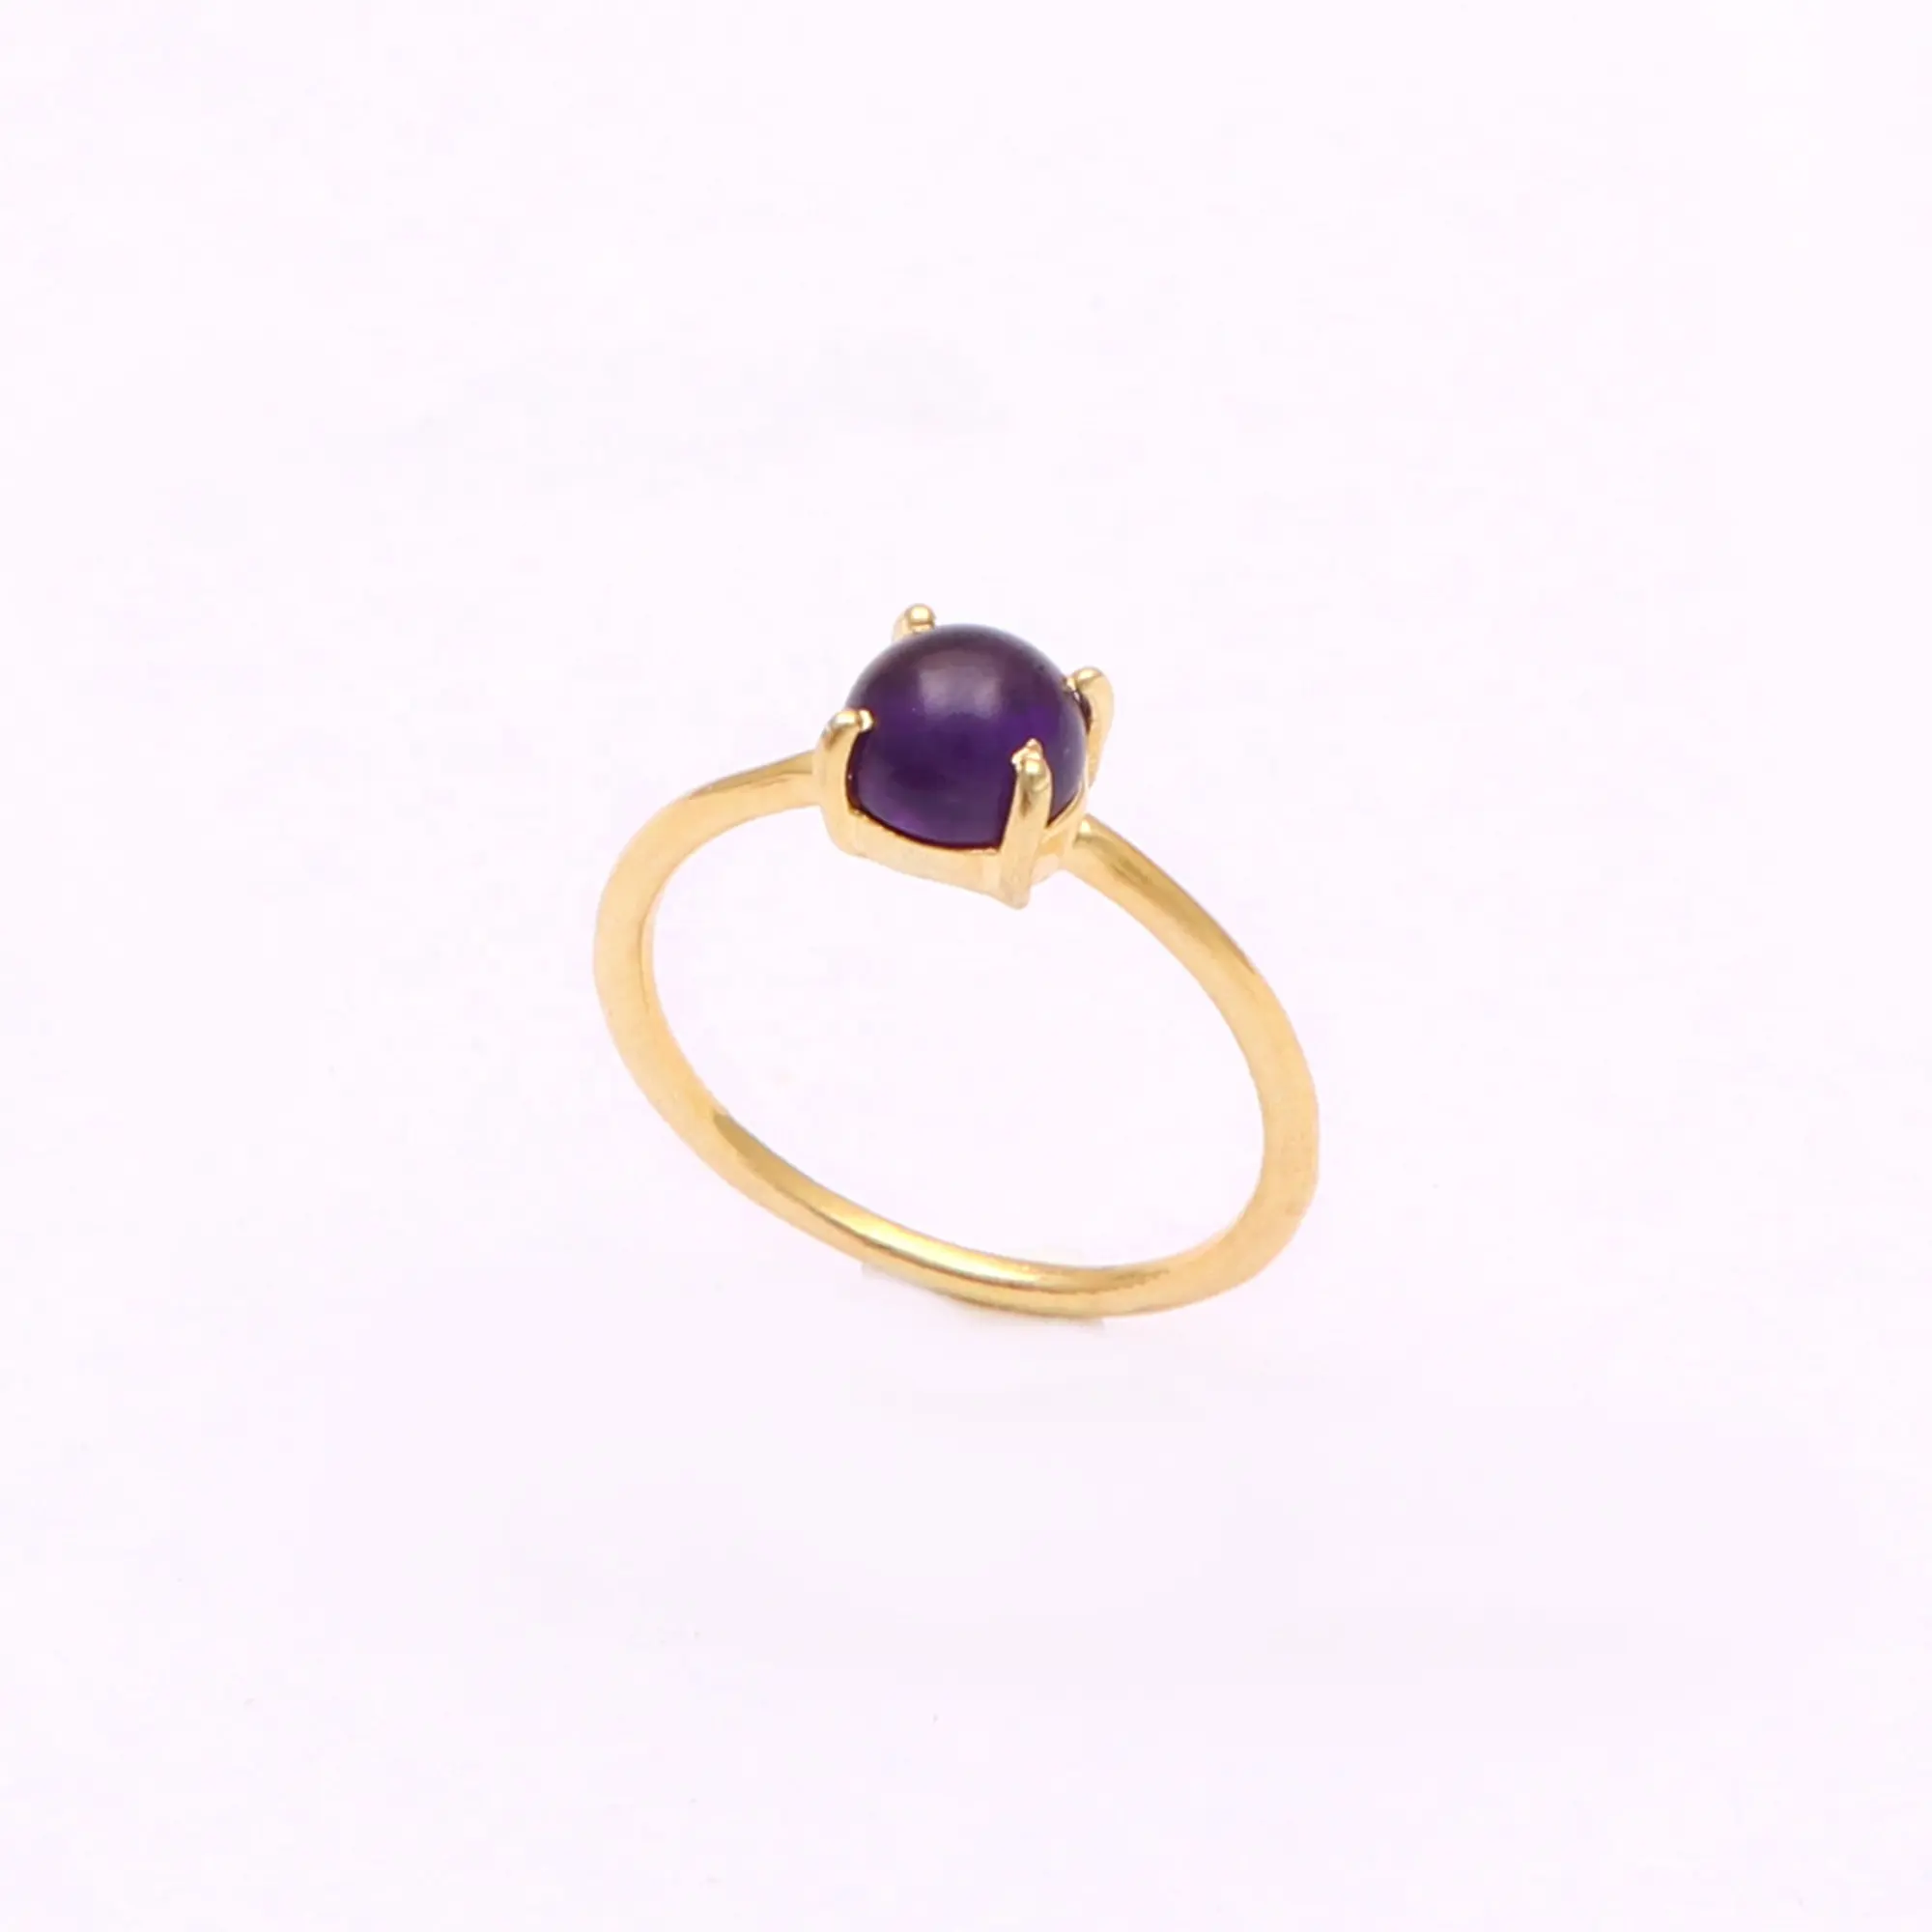 Natual viola ametista gemma anello sostanziale bordo oro forma rotonda anelli di design all'ingrosso fatti a mano gioielli da donna